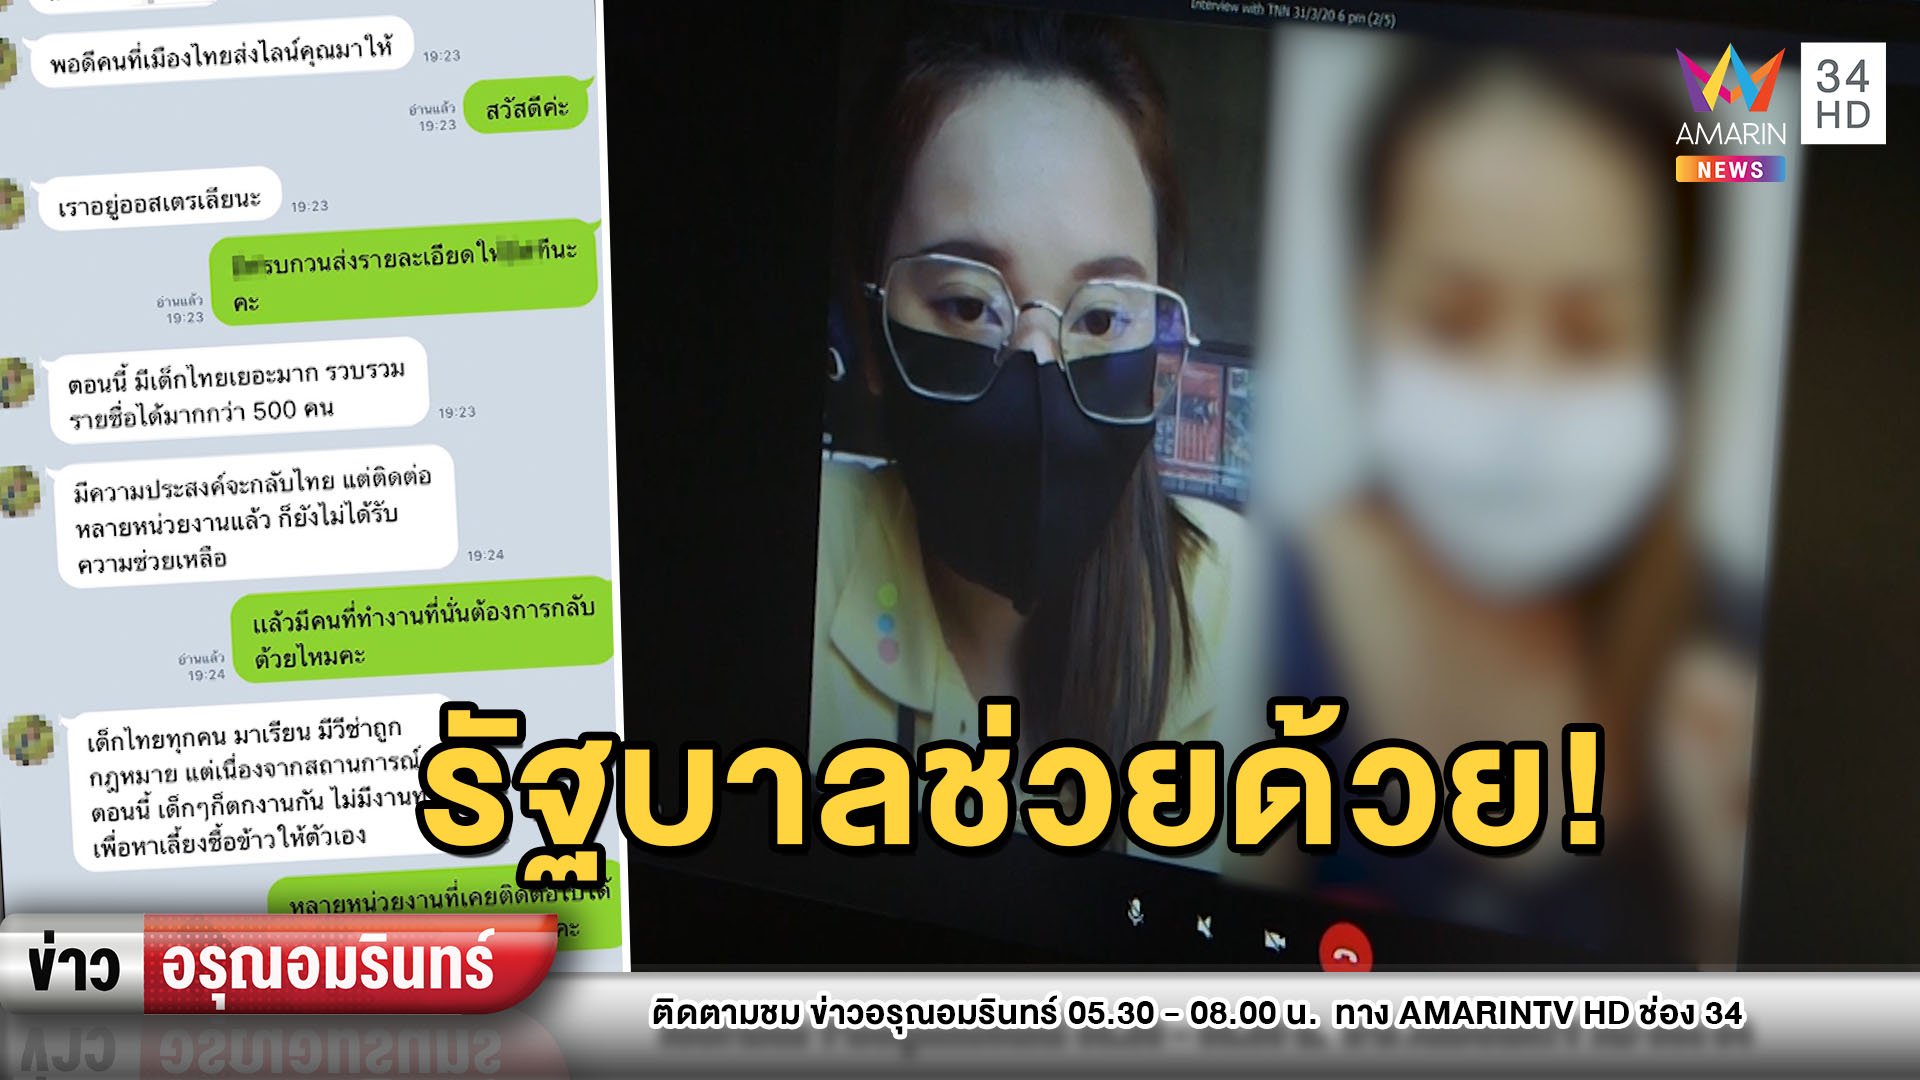 วอนรัฐบาลช่วยนักศึกษาไทยกว่า 1,000 คนกลับจากออสเตรเลีย | ข่าวอรุณอมรินทร์ | 1 เม.ย. 63 | AMARIN TVHD34